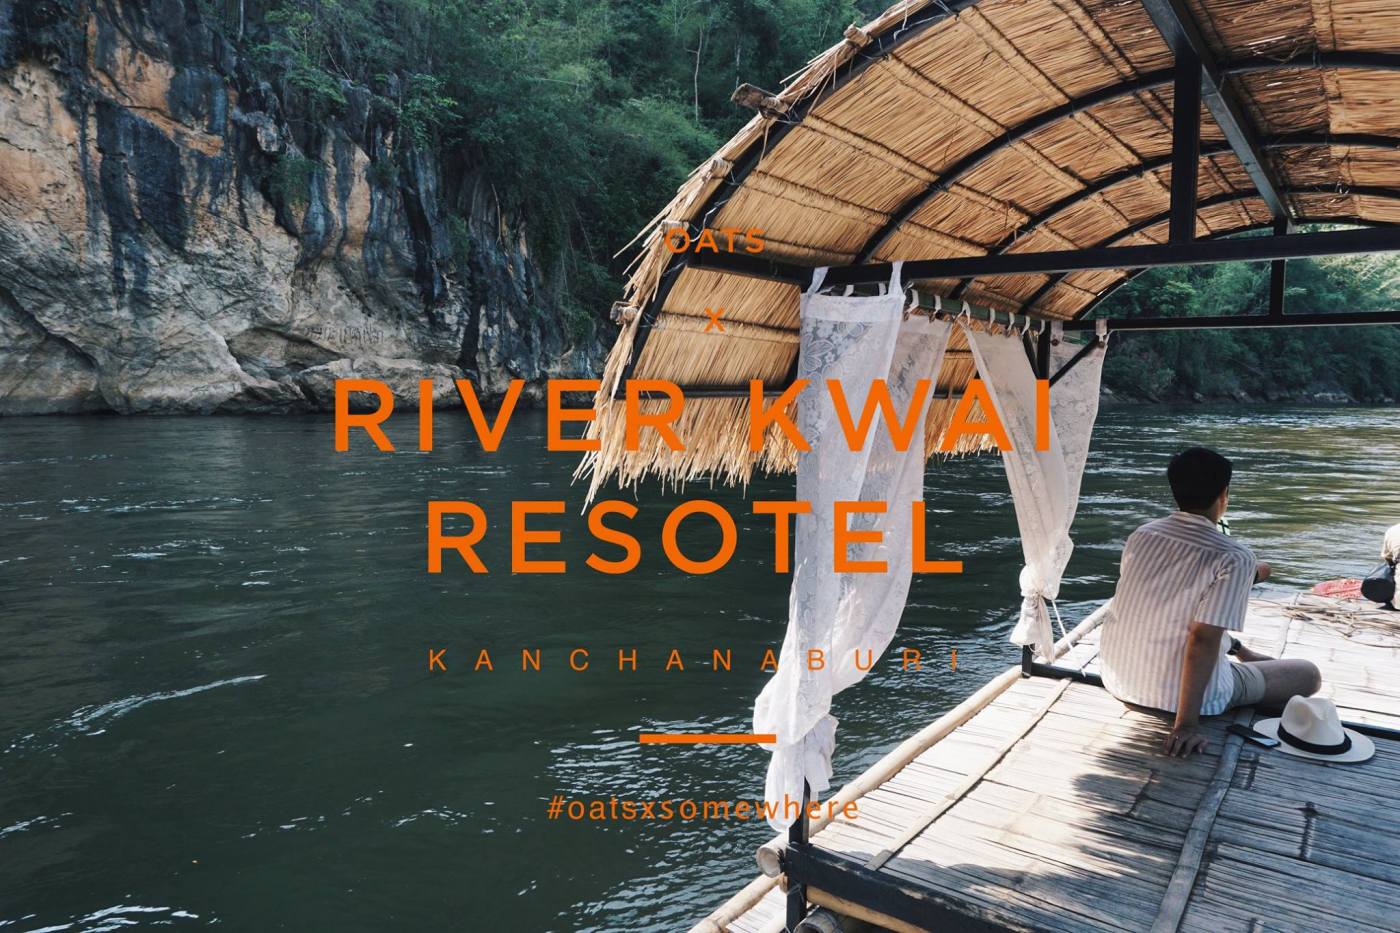 River Kwai Resotel ริเวอร์เเคว รีโซเทล กาญจนบุรี รีสอร์ท 1